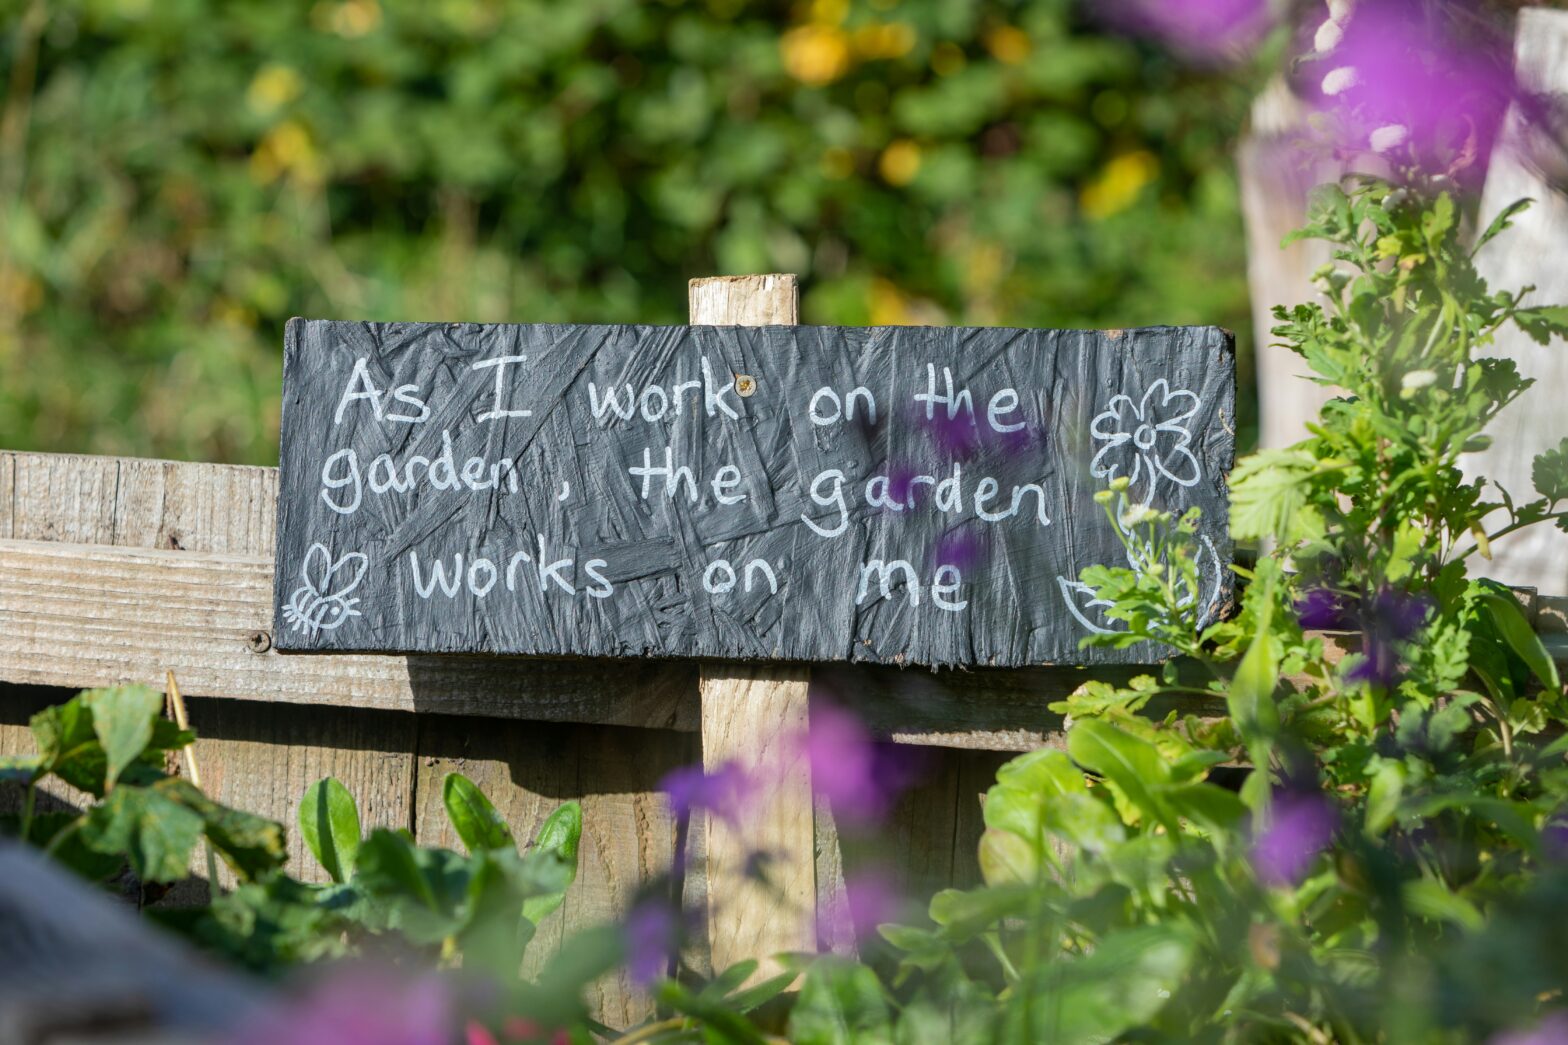 Gardening for Beginner's | Texas Gardnening Guide | Gardening Tips | Cash for Houses Agency DFW